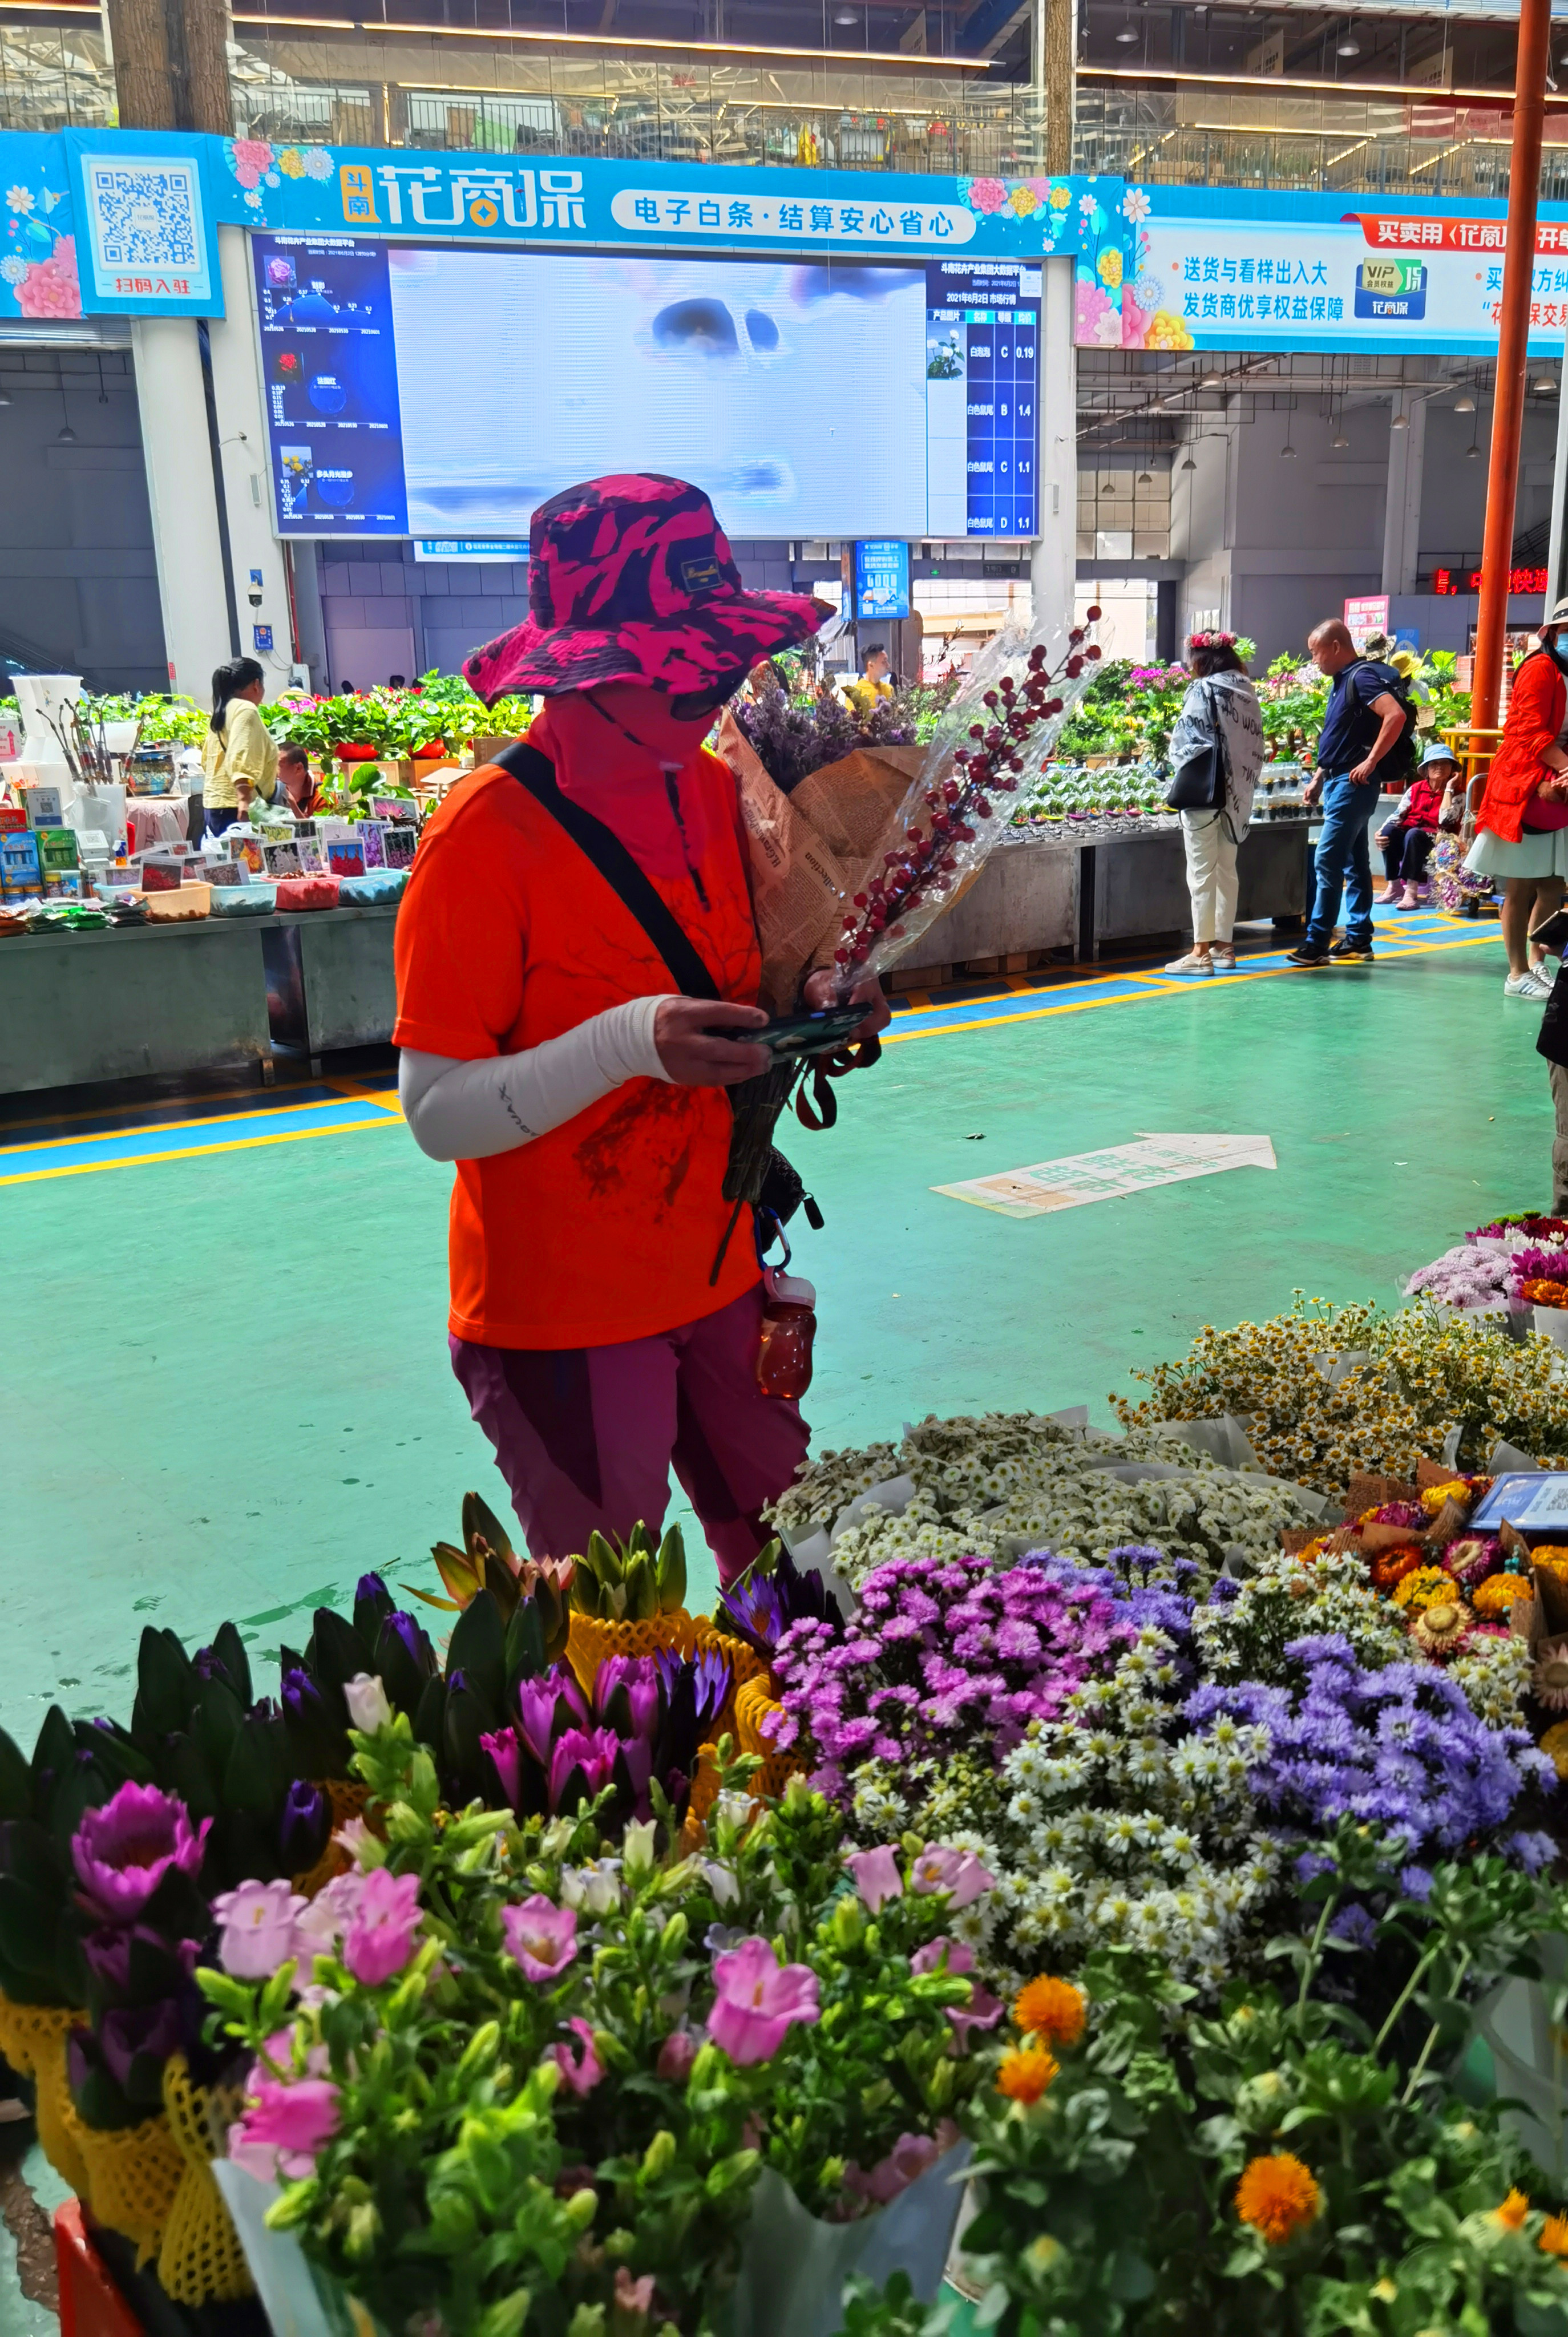 滇川藏24天之旅(五十一) 初探昆明斗南花卉交易市场